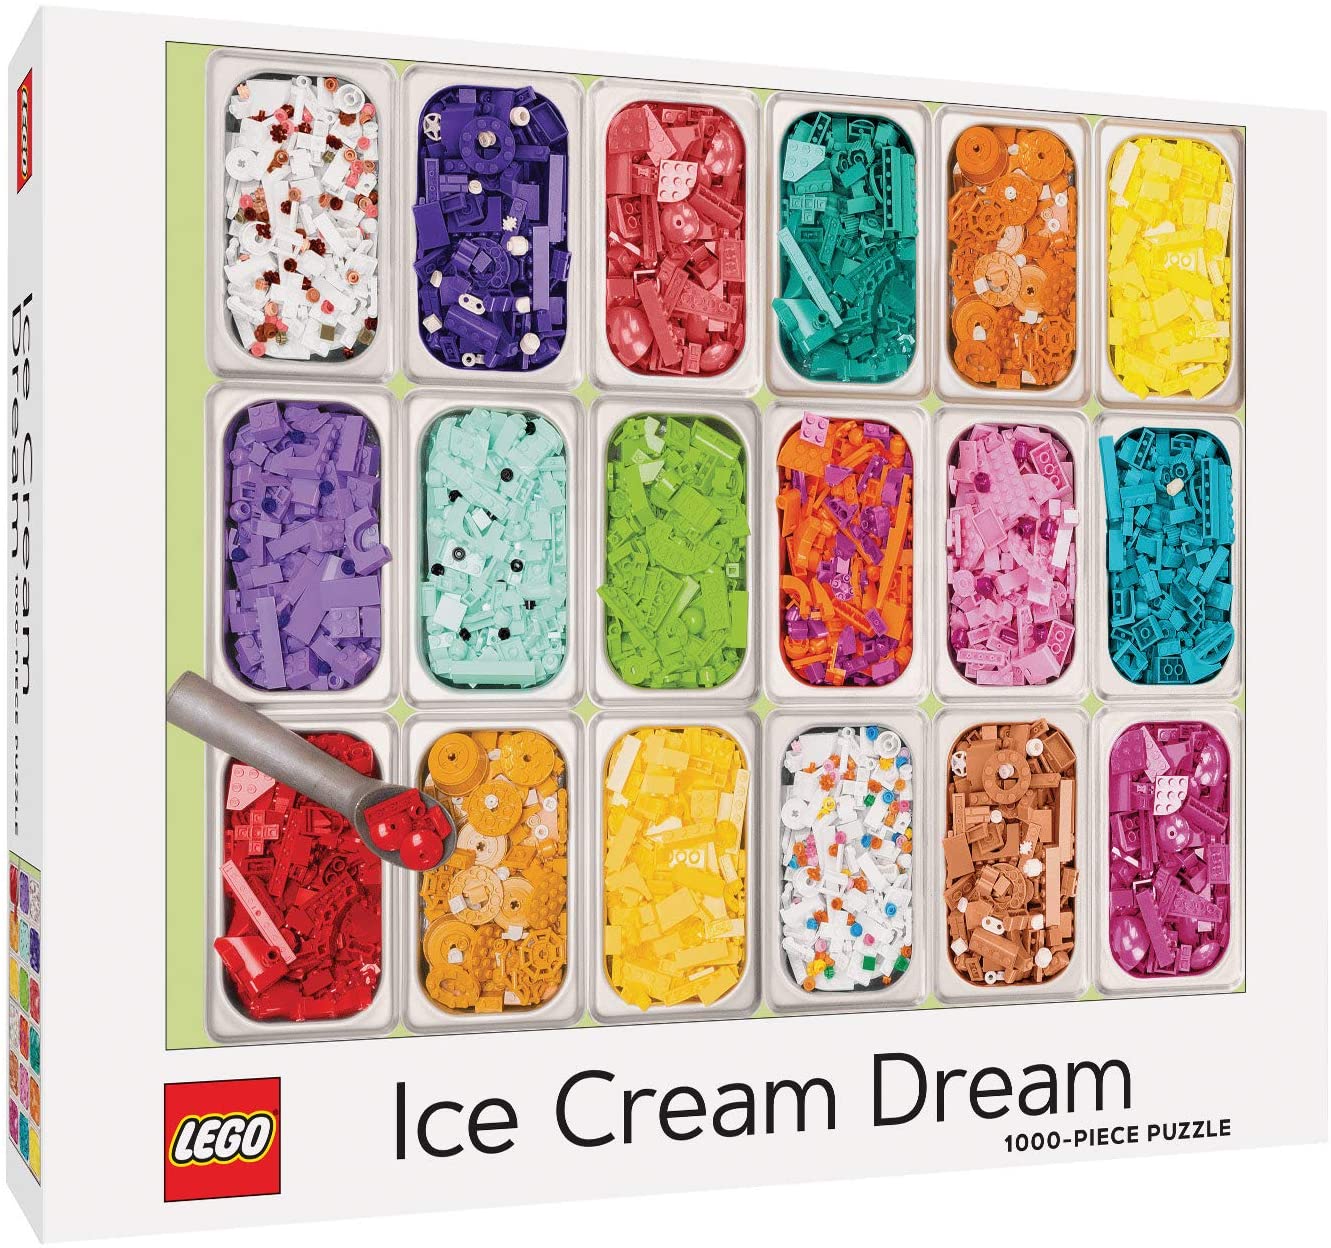 Lego Ice Cream Dream 1000 Piece Puzzle